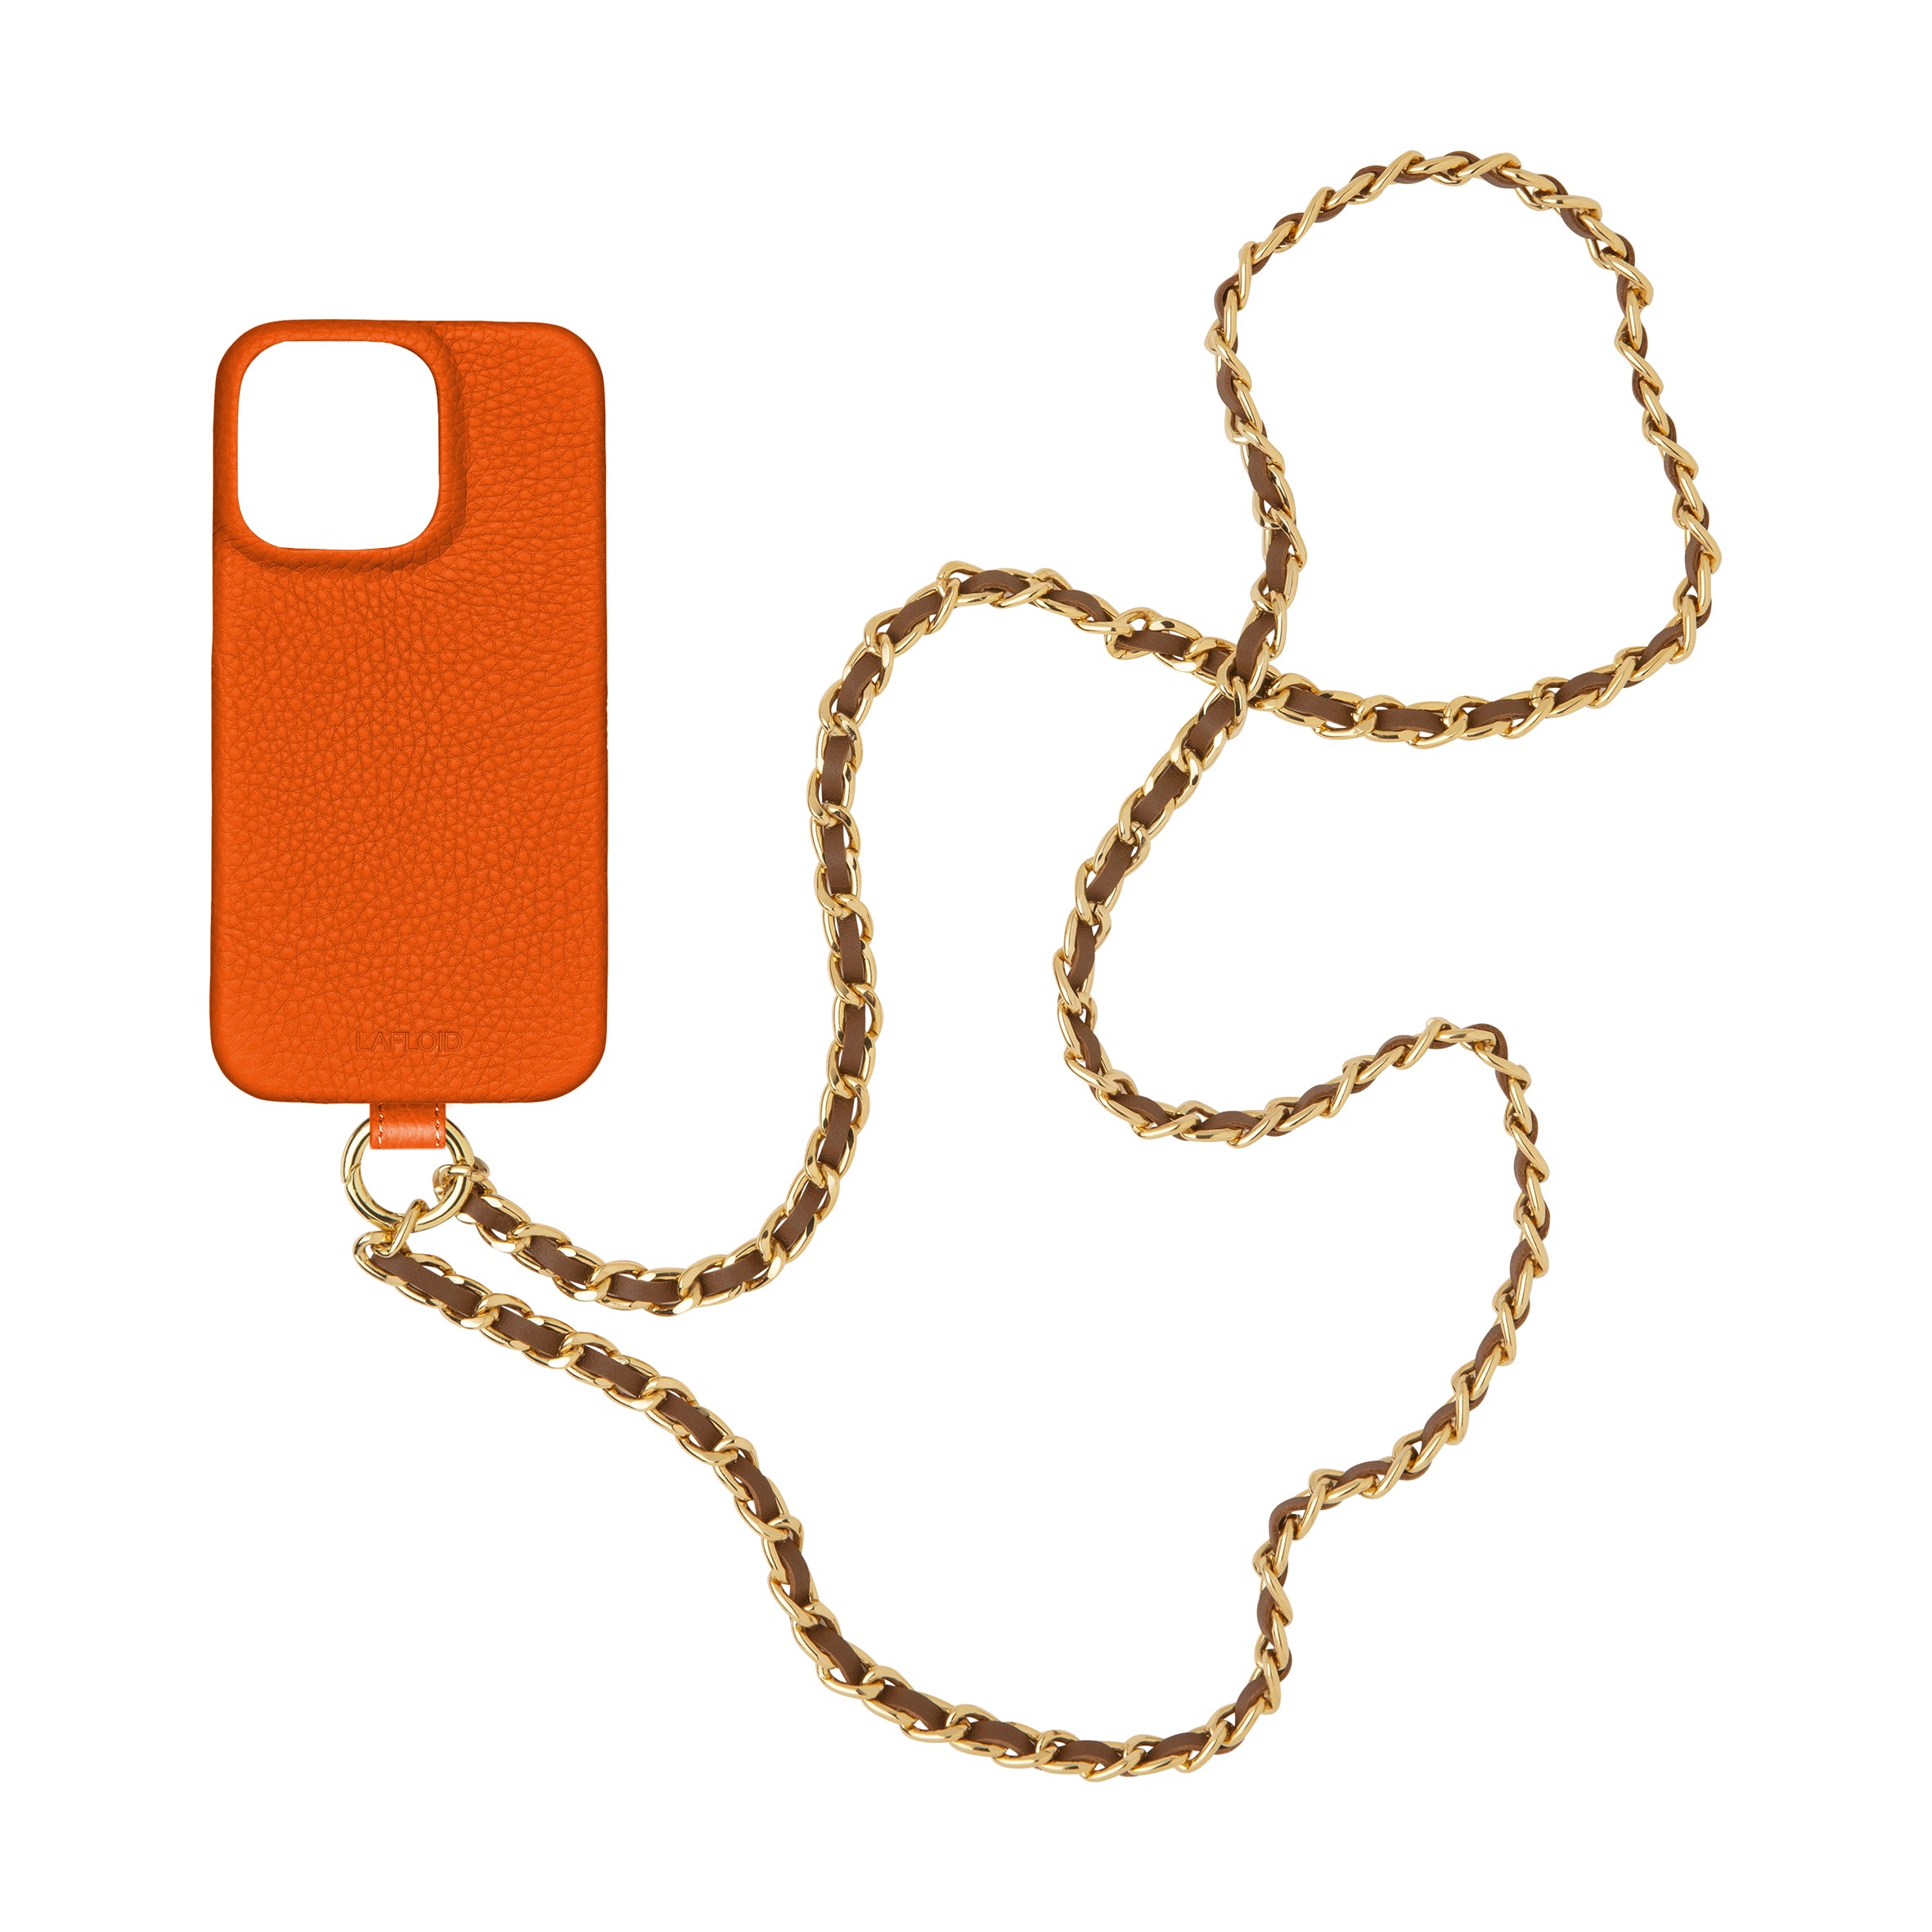 iPhone 15 Pro Max Stap Case Orange